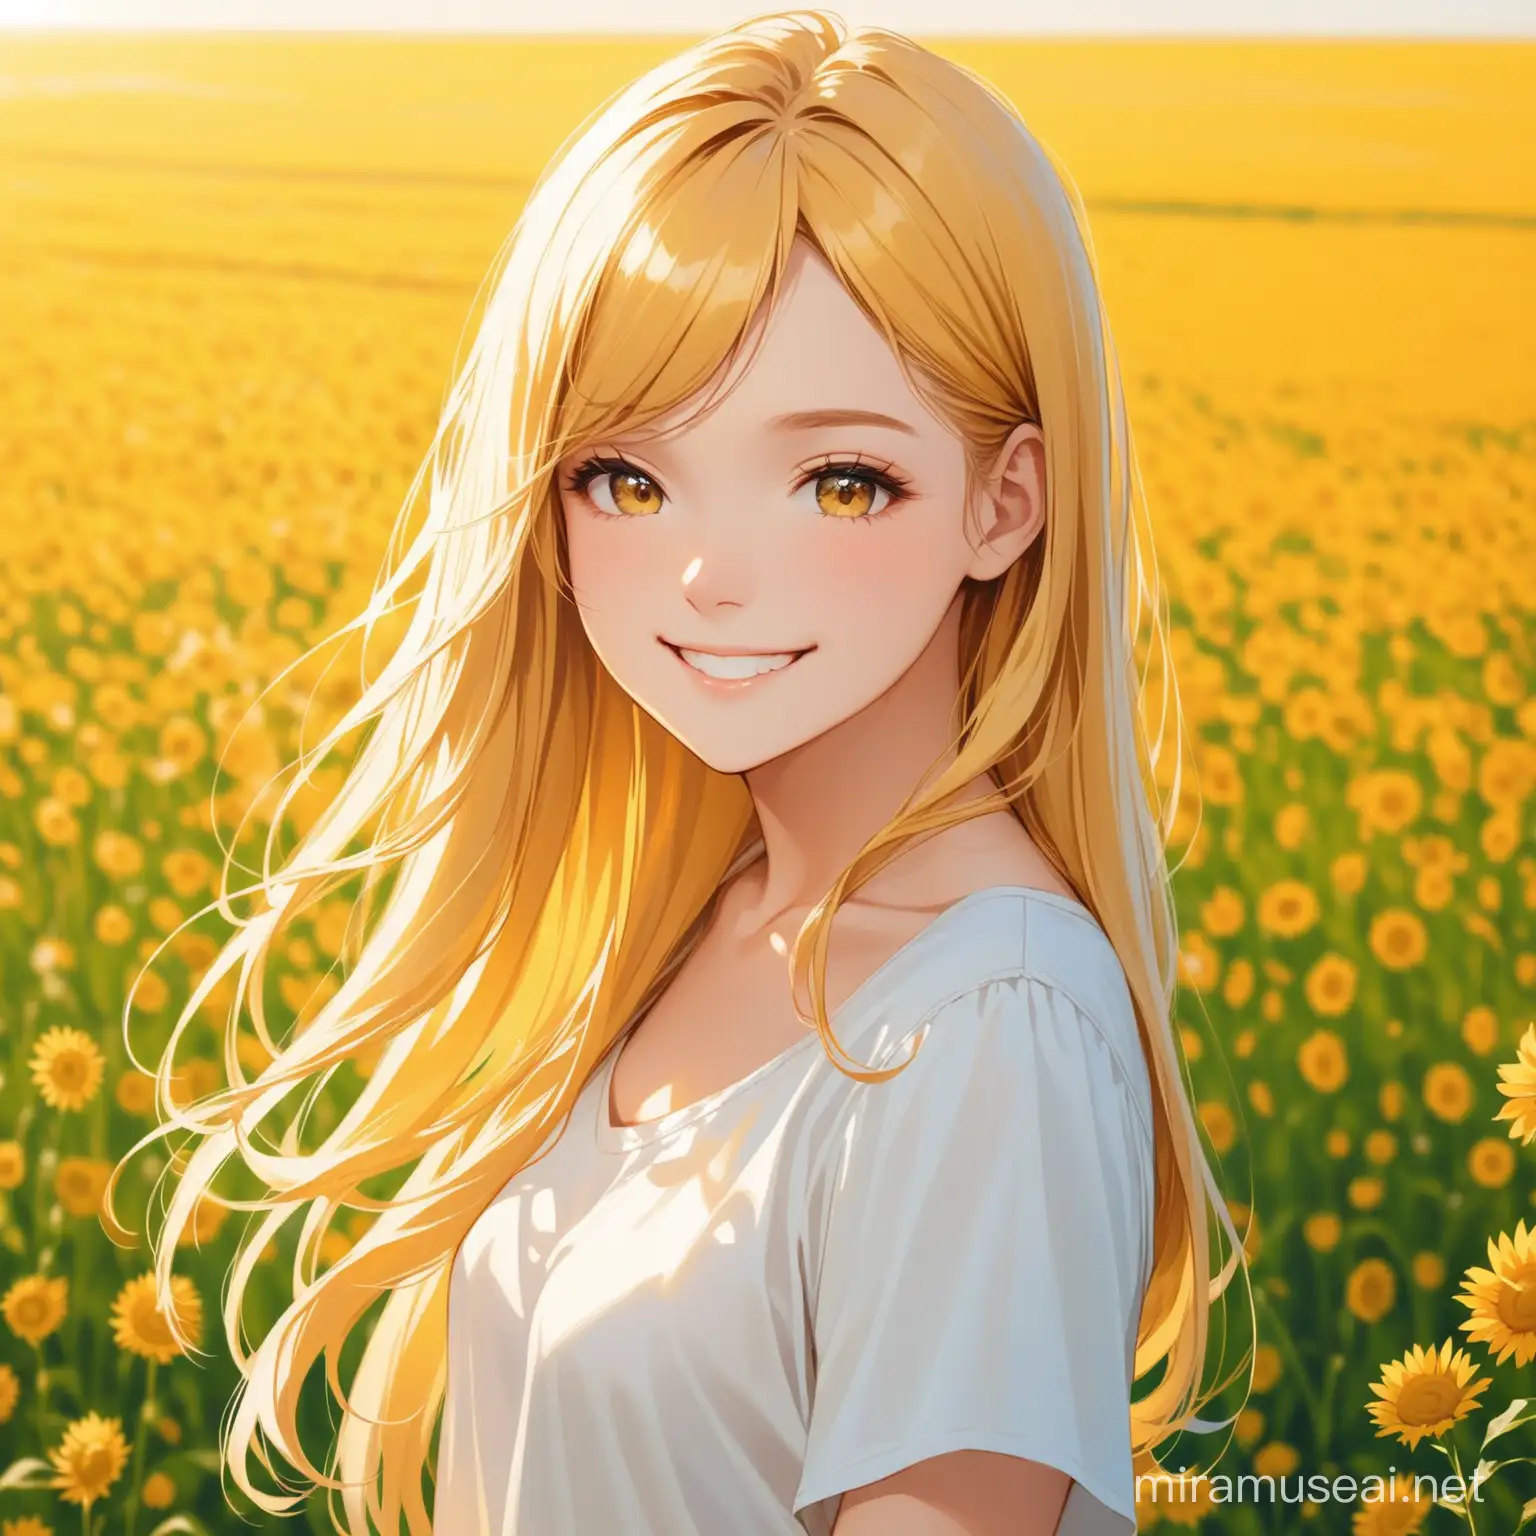 GoldenHaired Girl Smiling in Field